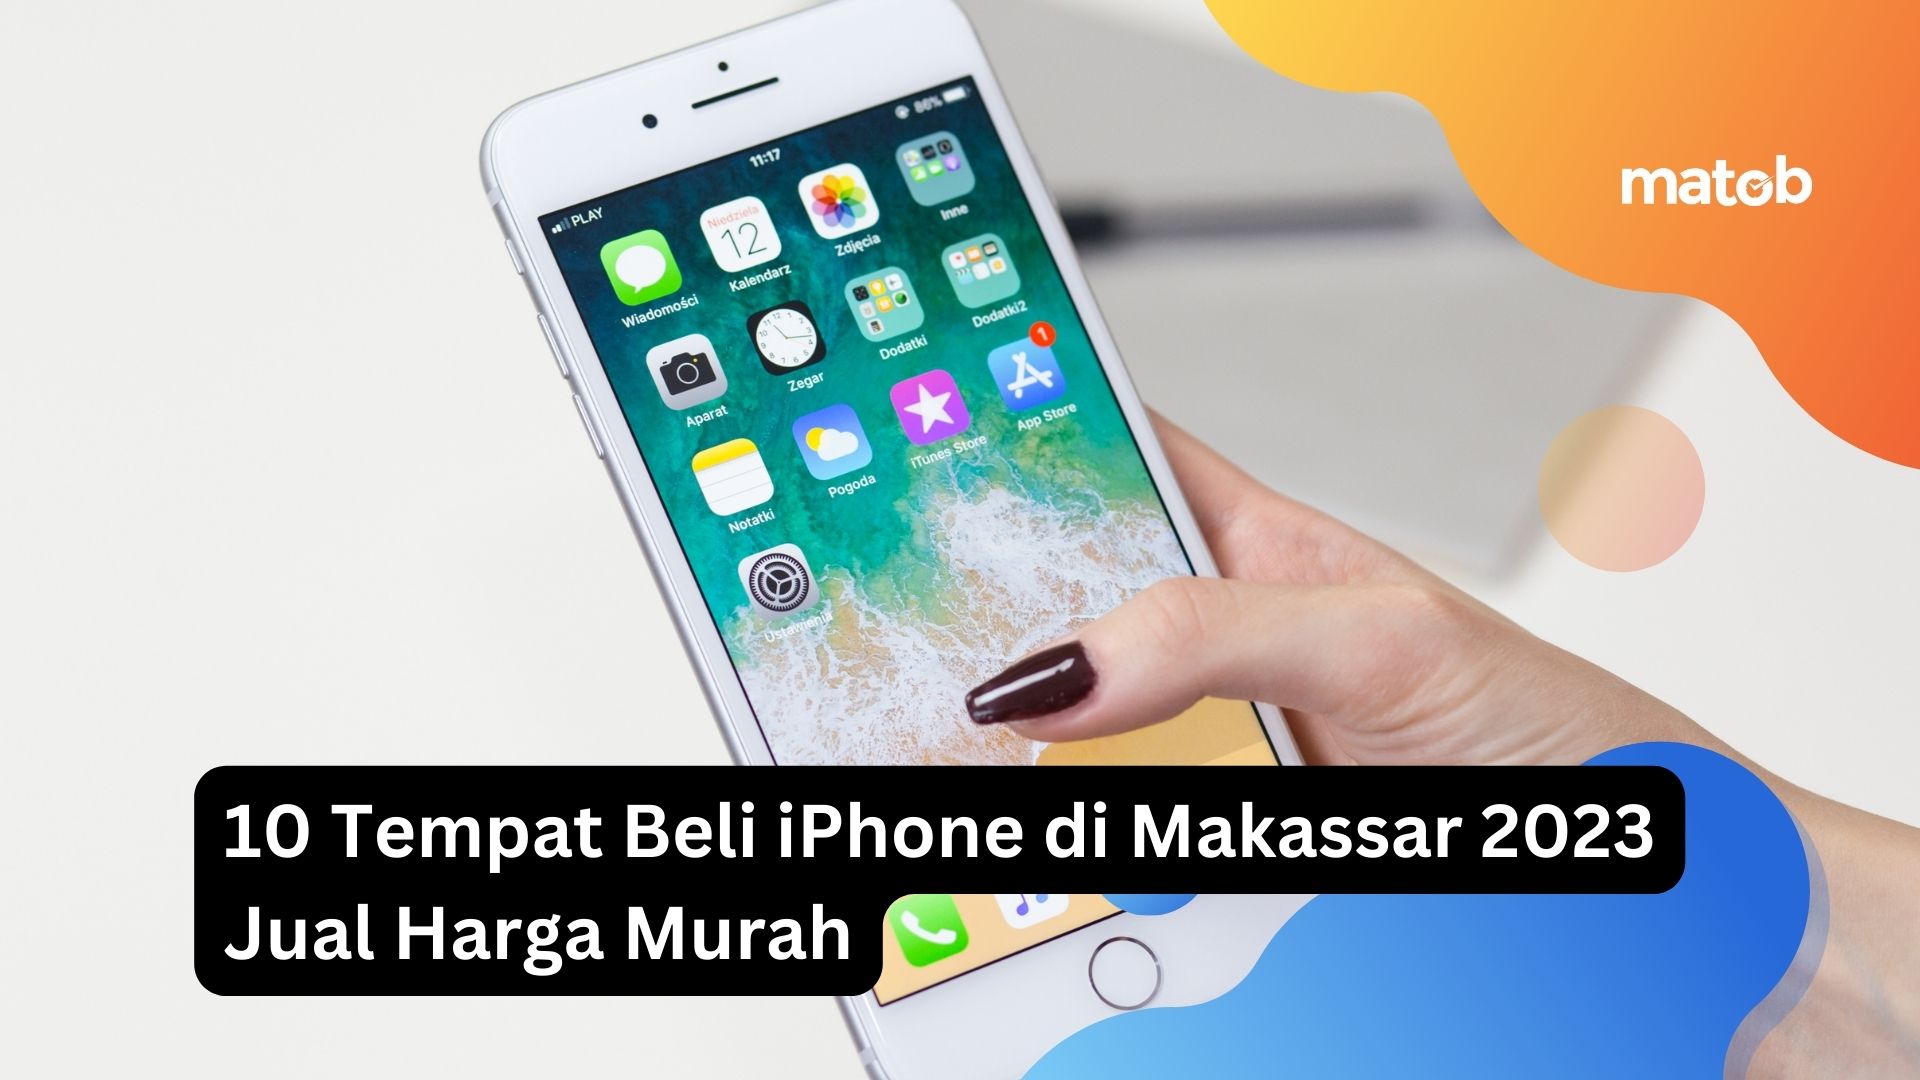 10 Tempat Beli iPhone di Makassar 2023 Jual Harga Murah